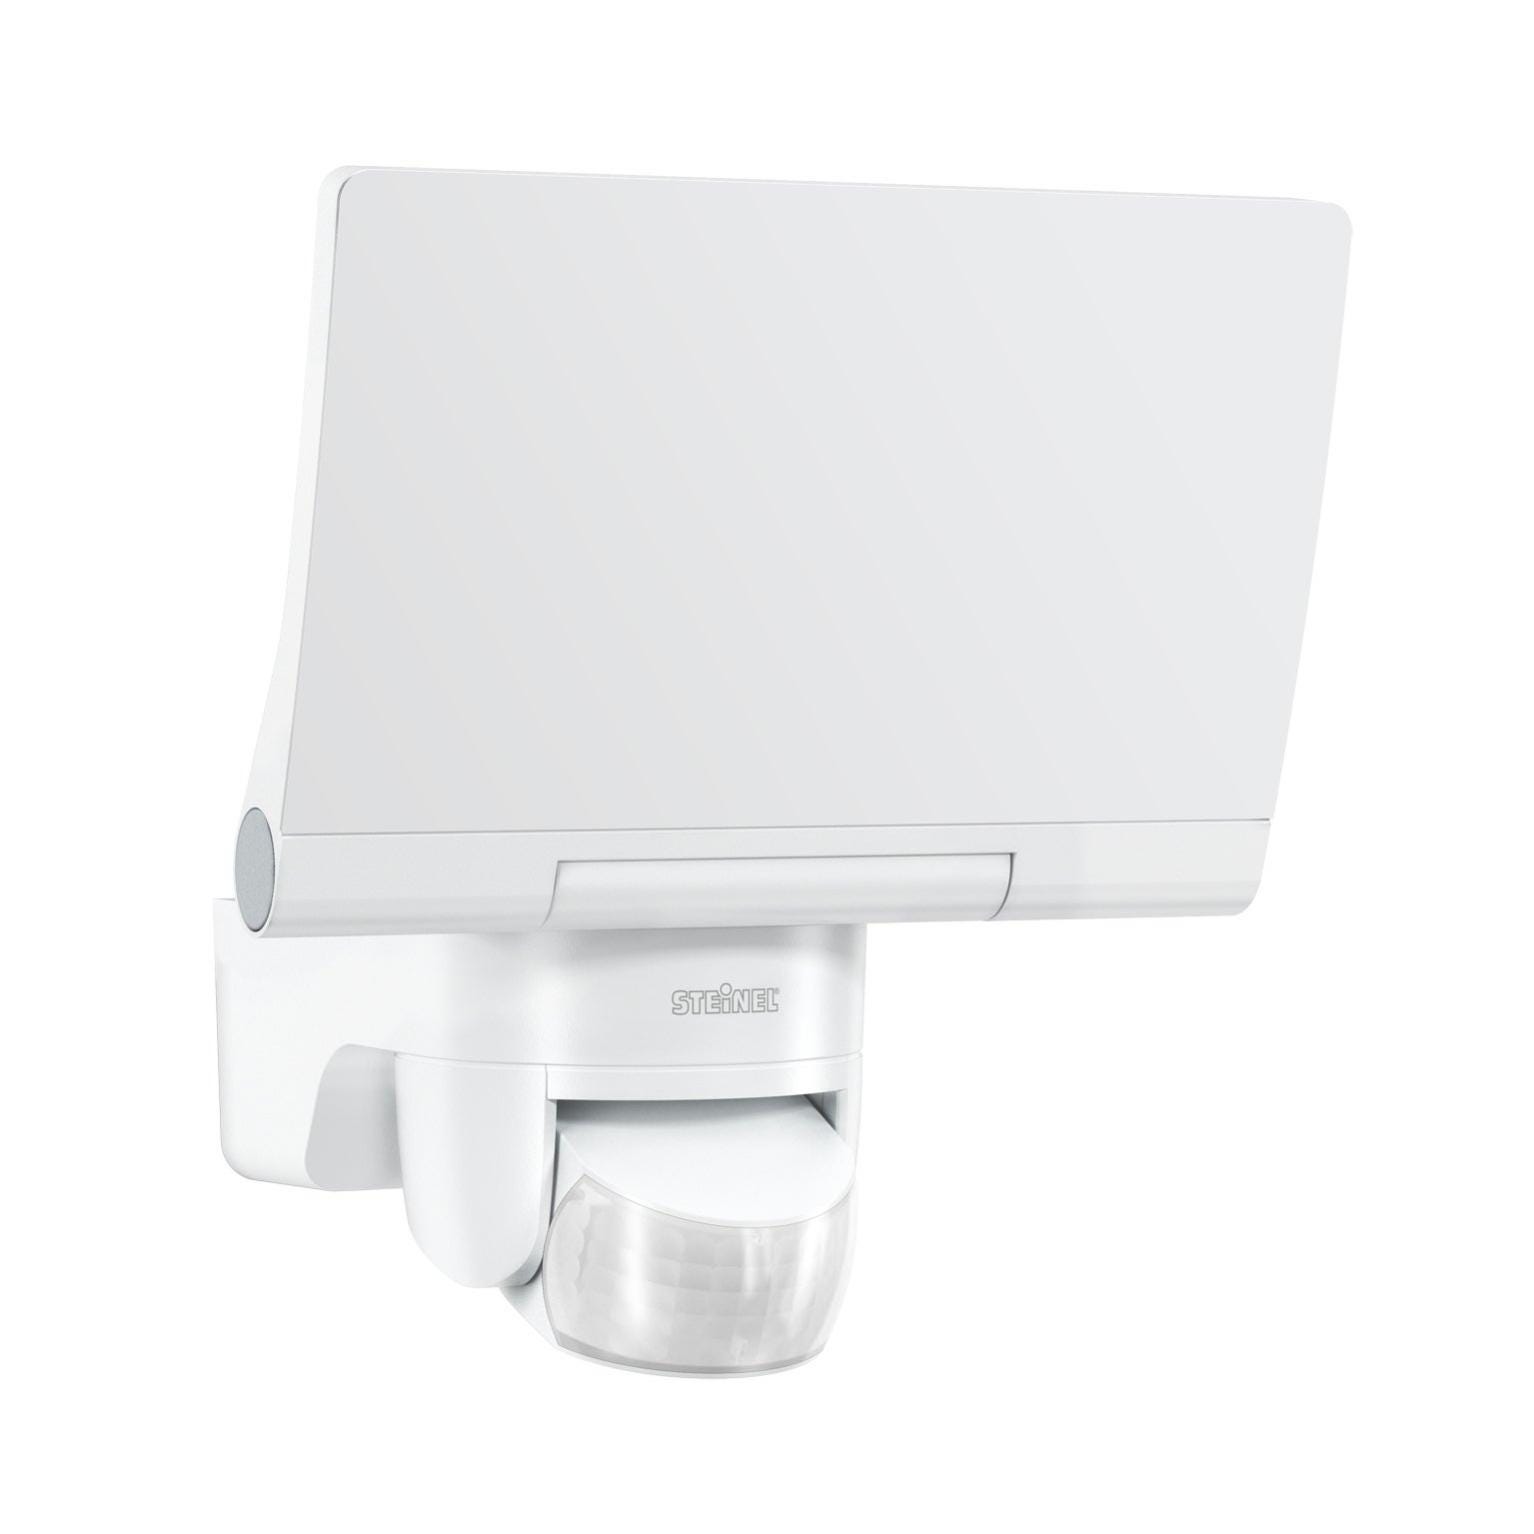 Projecteur détecteur connecté Bluetooth LED intégrée blanc Xled home 2SC  STEINEL